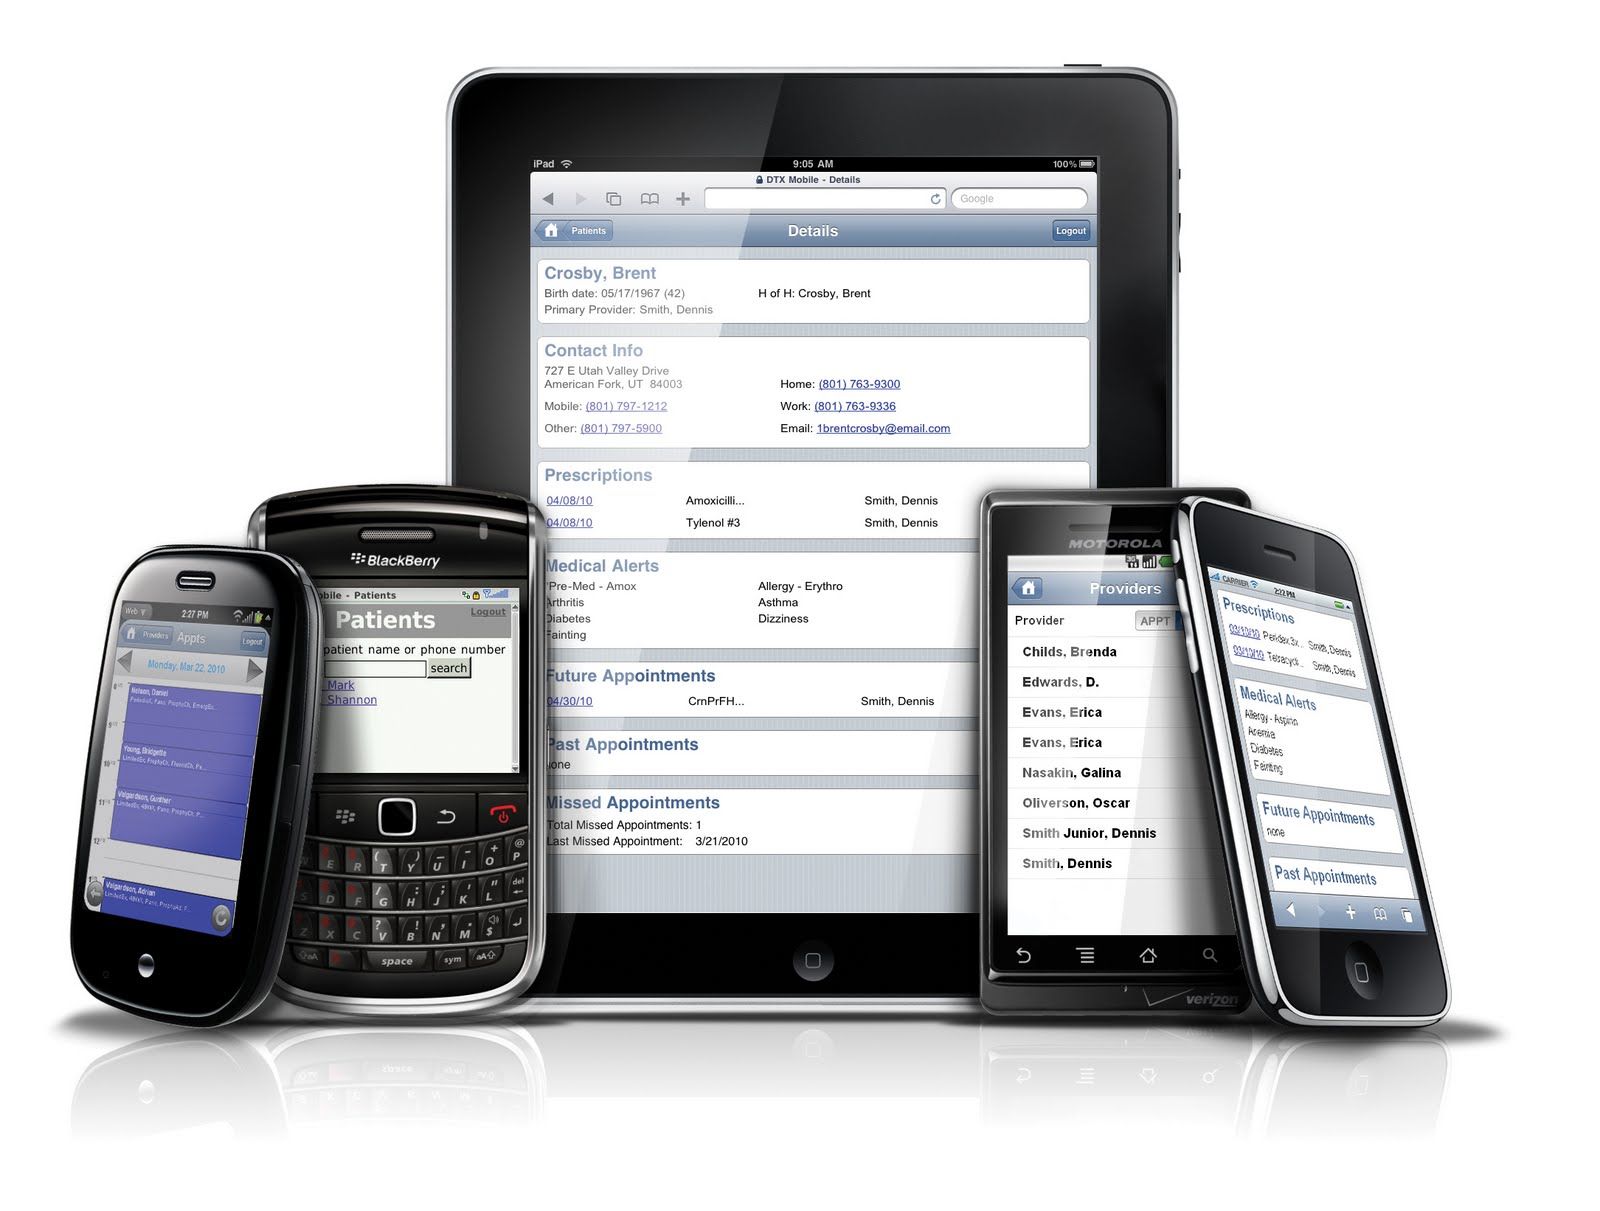 Tablets e smartphones mudaram o mercado de impressão e gestão de documentos